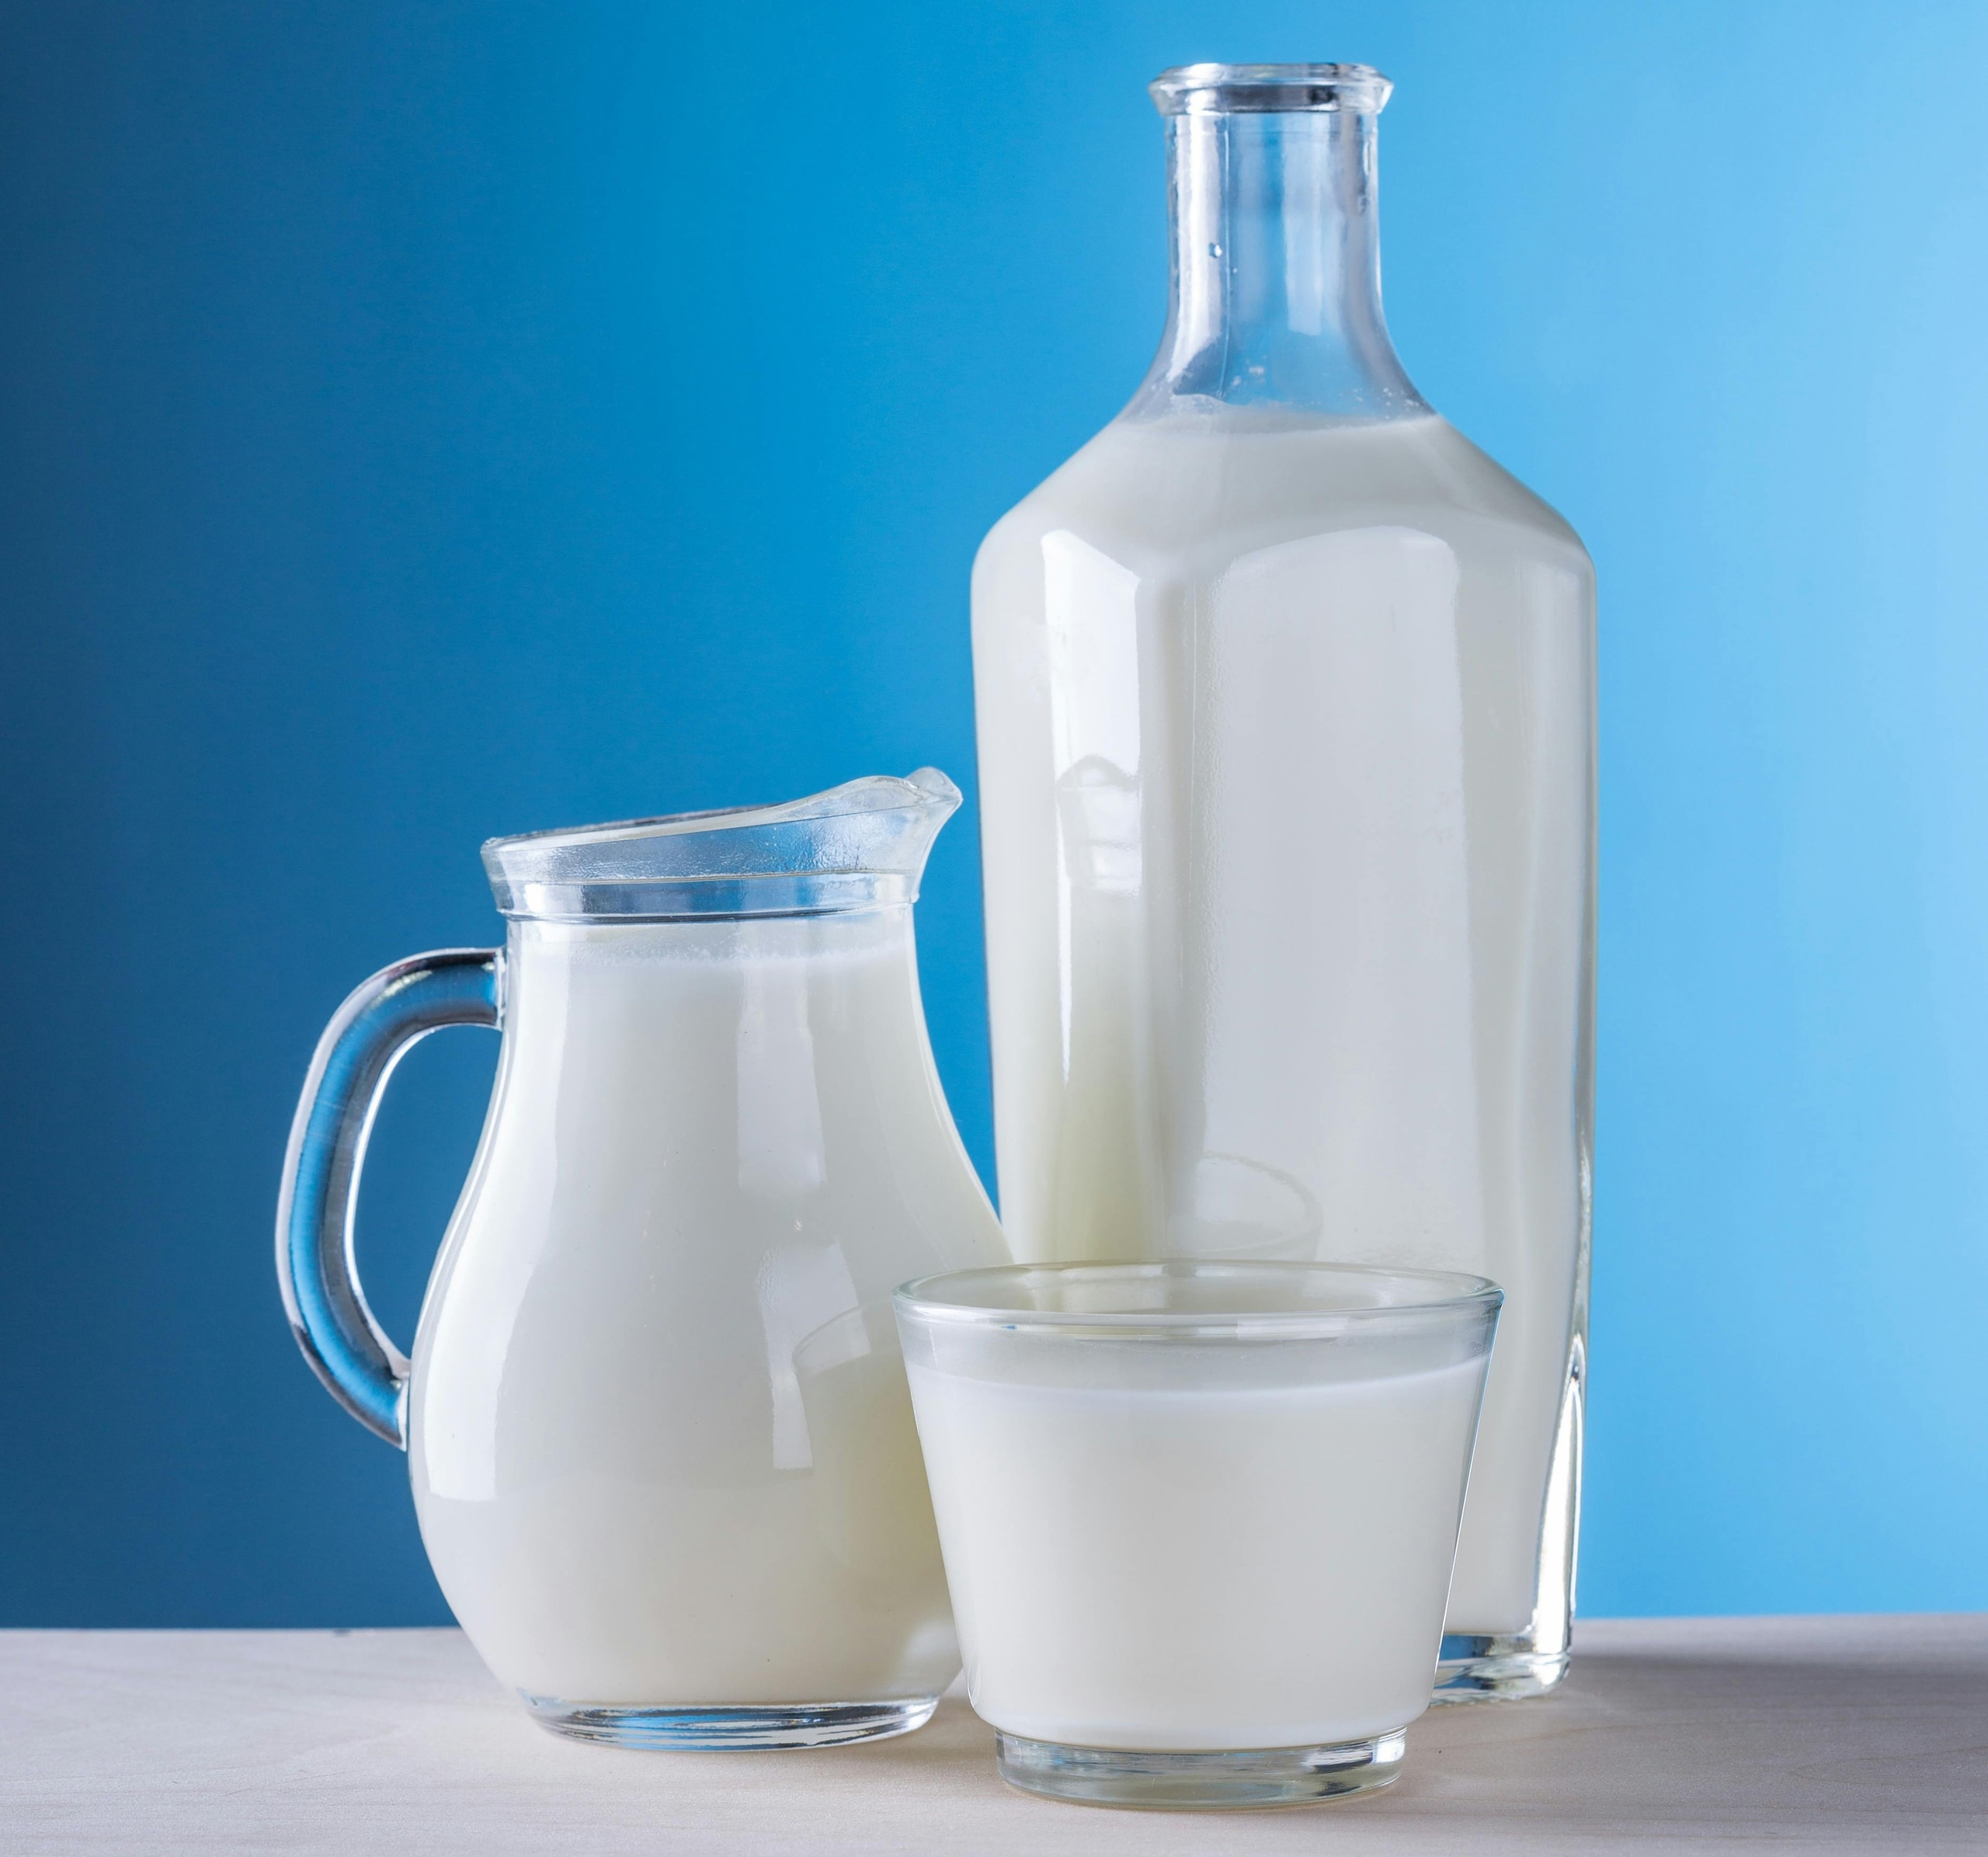 При расстройстве желудка людям следует избегать молока и молочных продуктов.